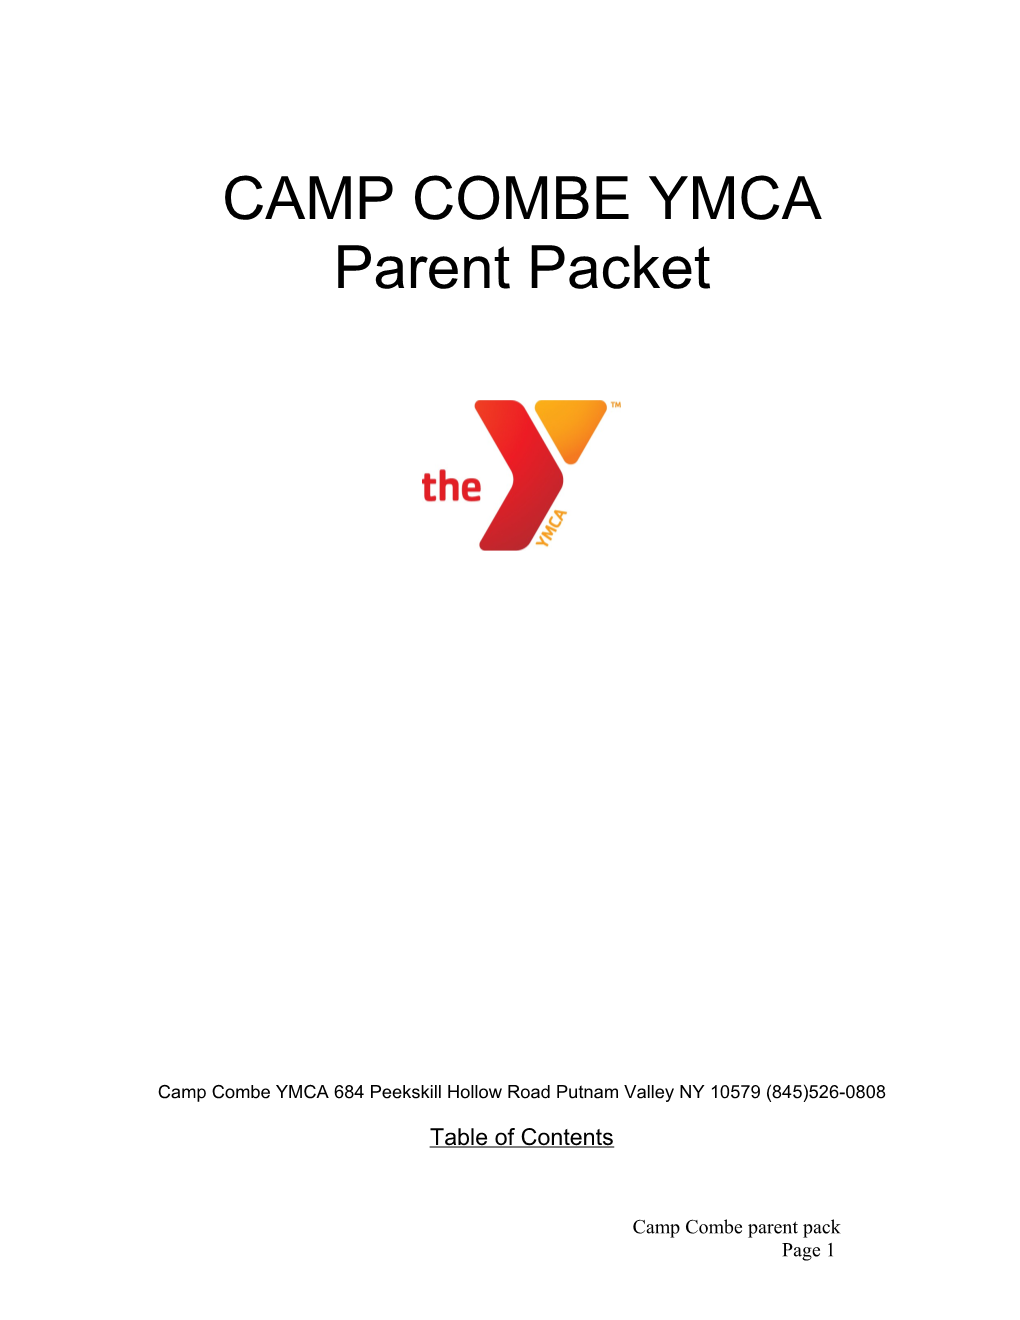 Camp Combe YMCA 684 Peekskill Hollow Road Putnam Valley NY 10579 (845)526-0808